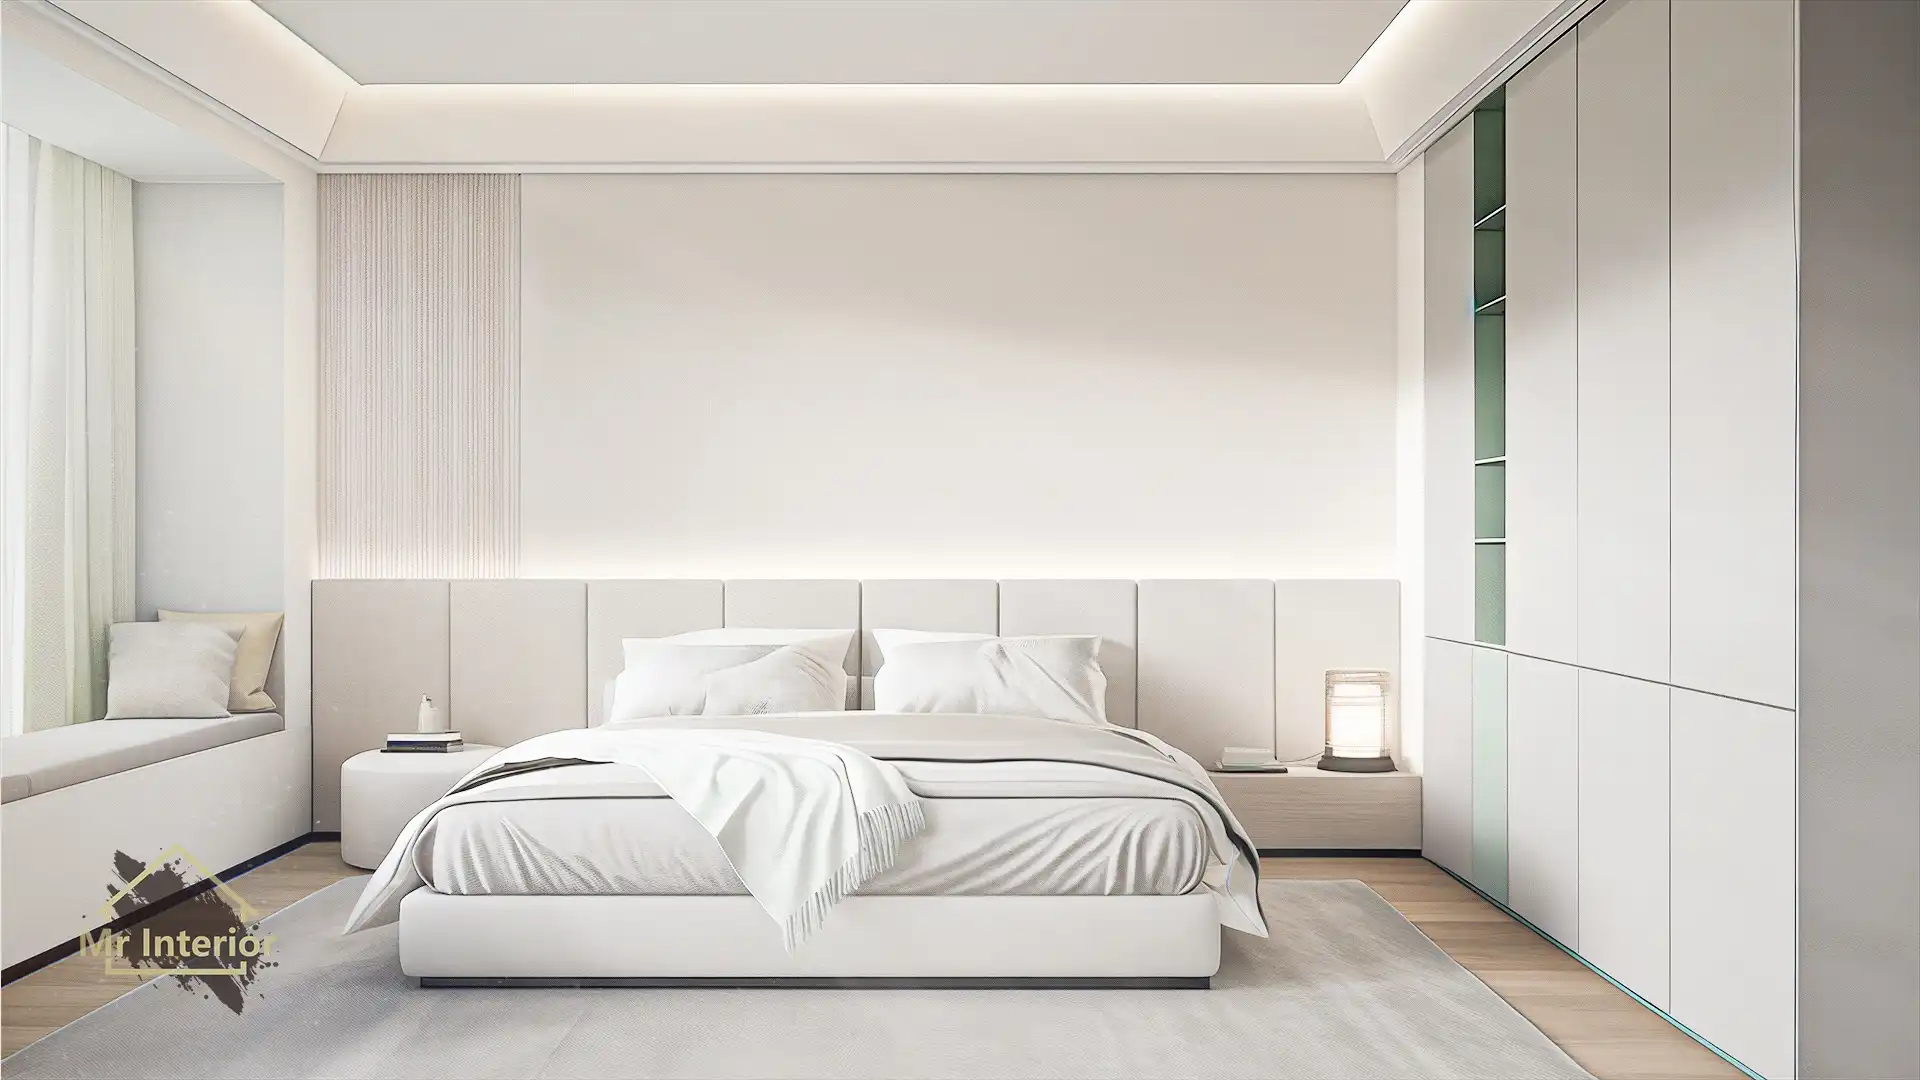 小清新設計風格睡房，白色主調，淺綠點綴。雙人床，衣櫃，床頭櫃。Mr Interior室內設計、裝修、傢俬風格。